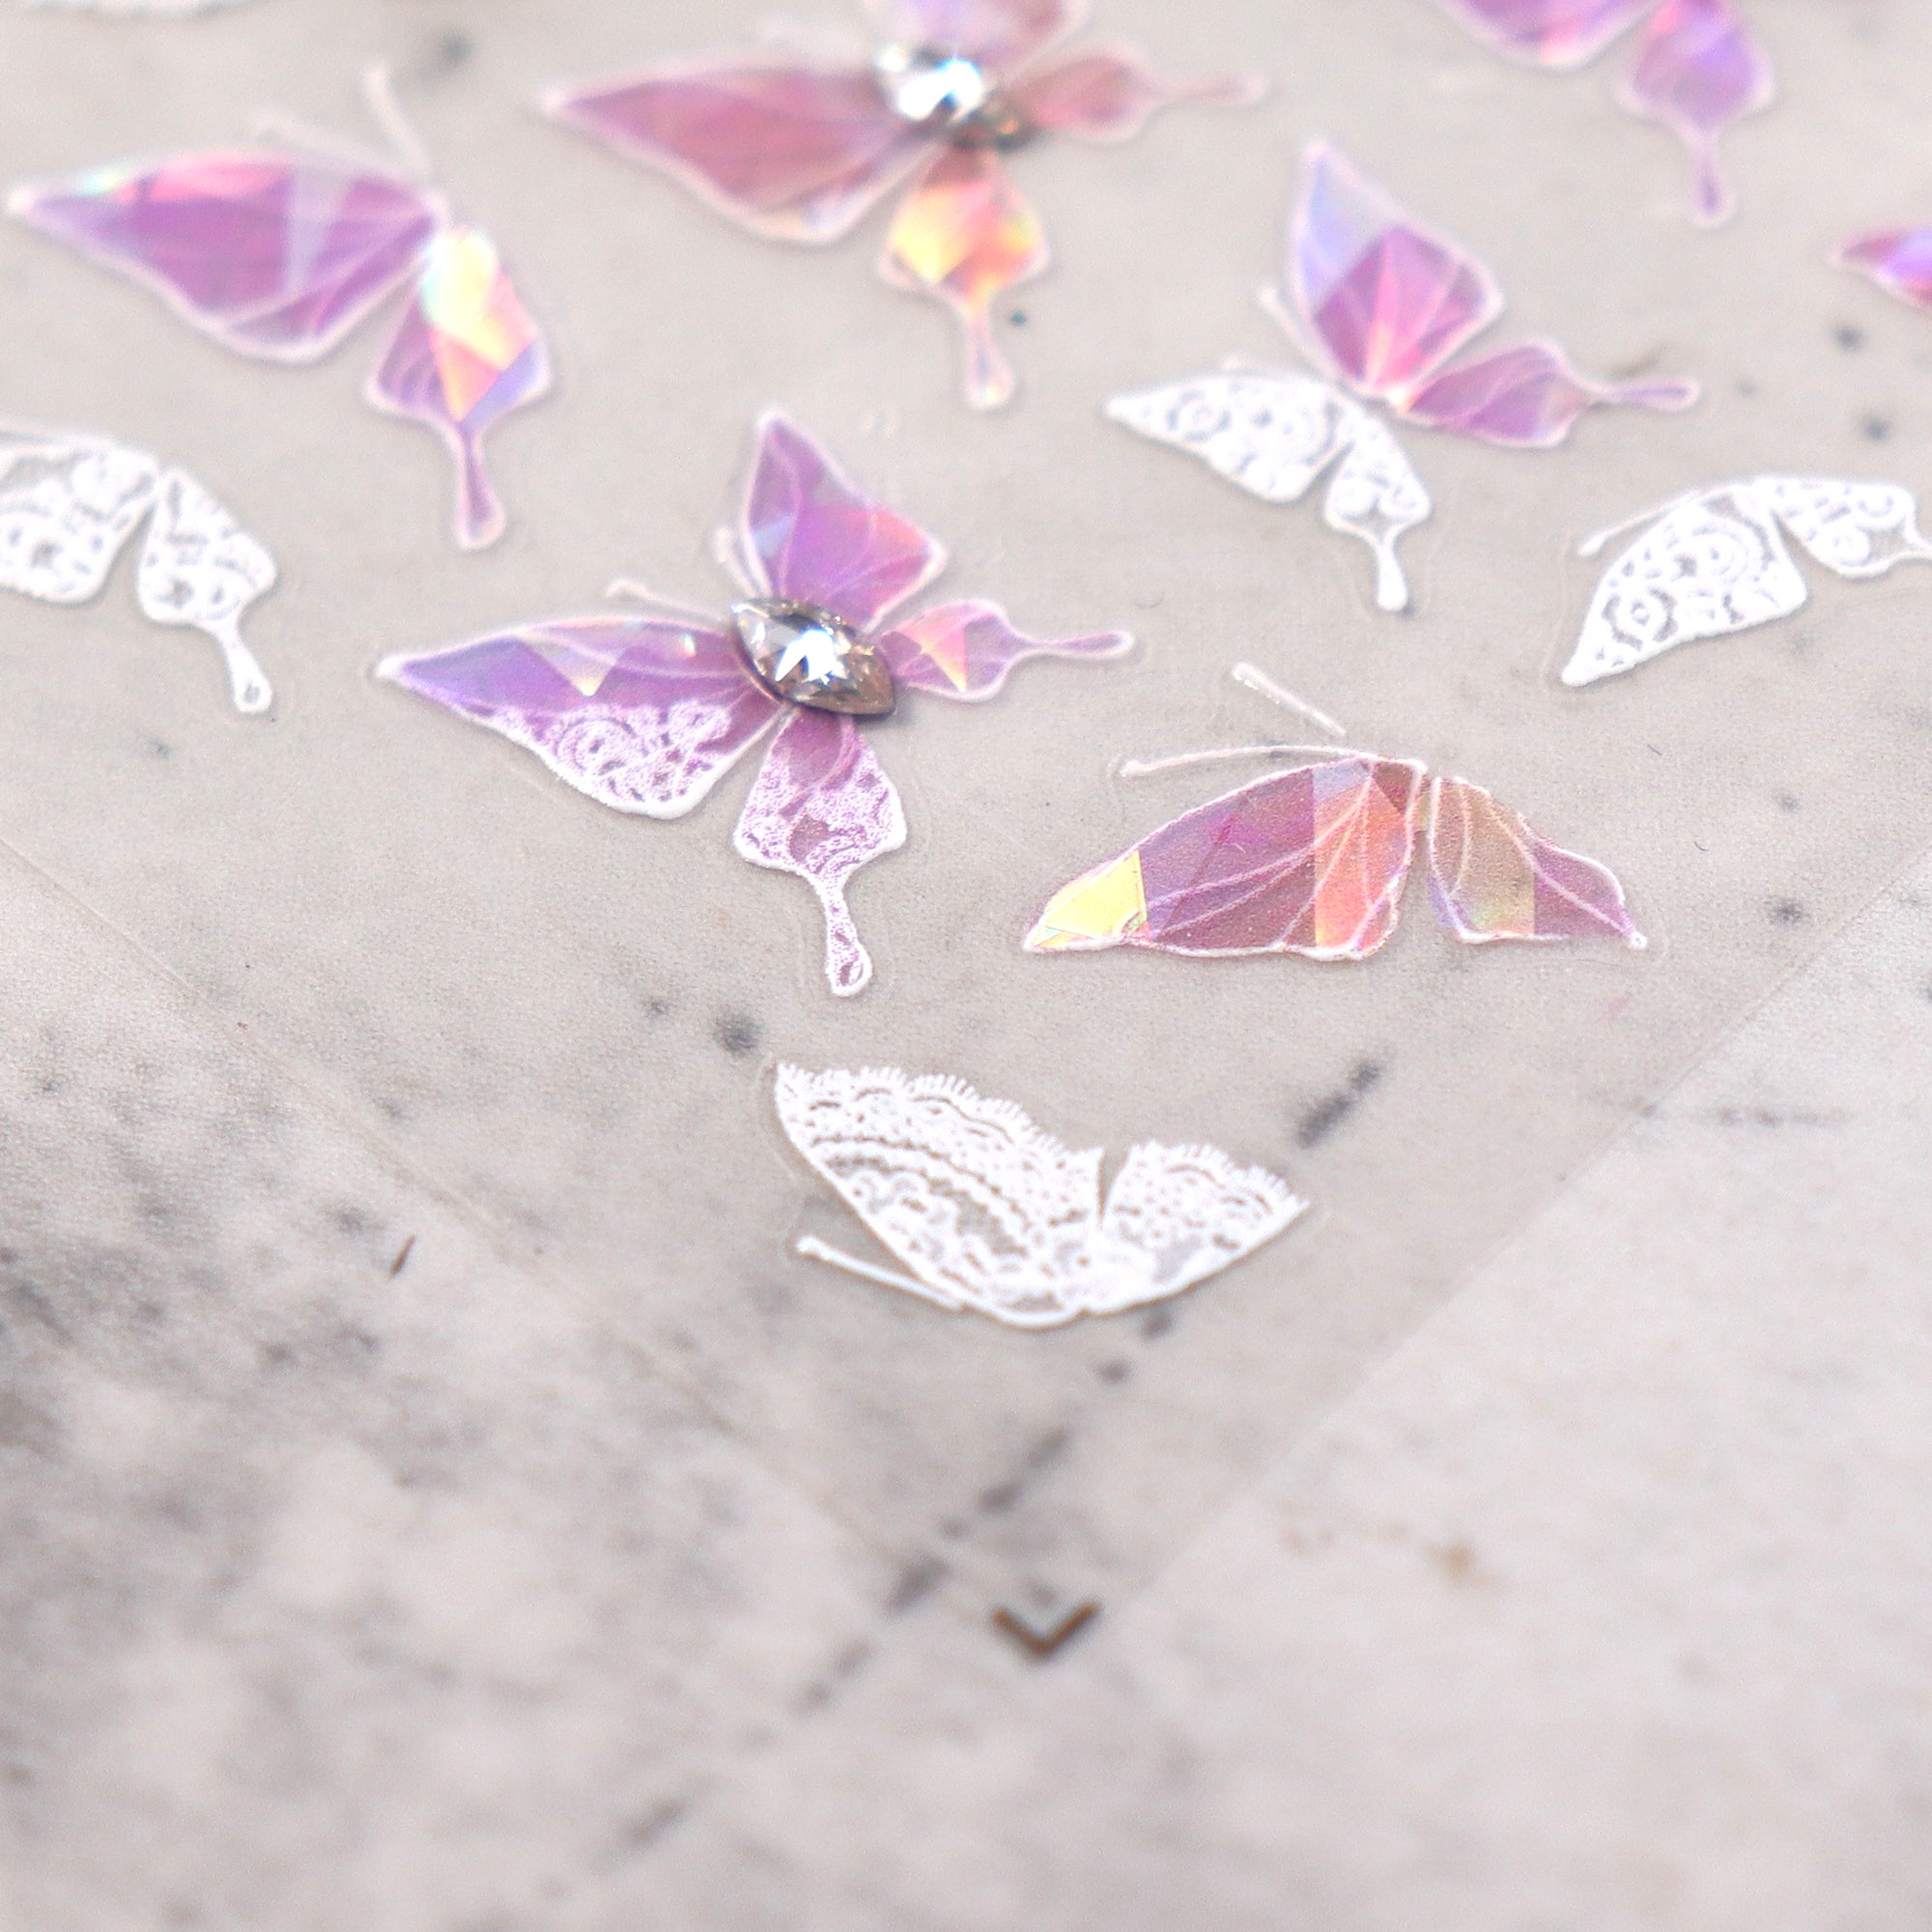 Rhinestone Nail Sticker - Pink Shell Butterfly